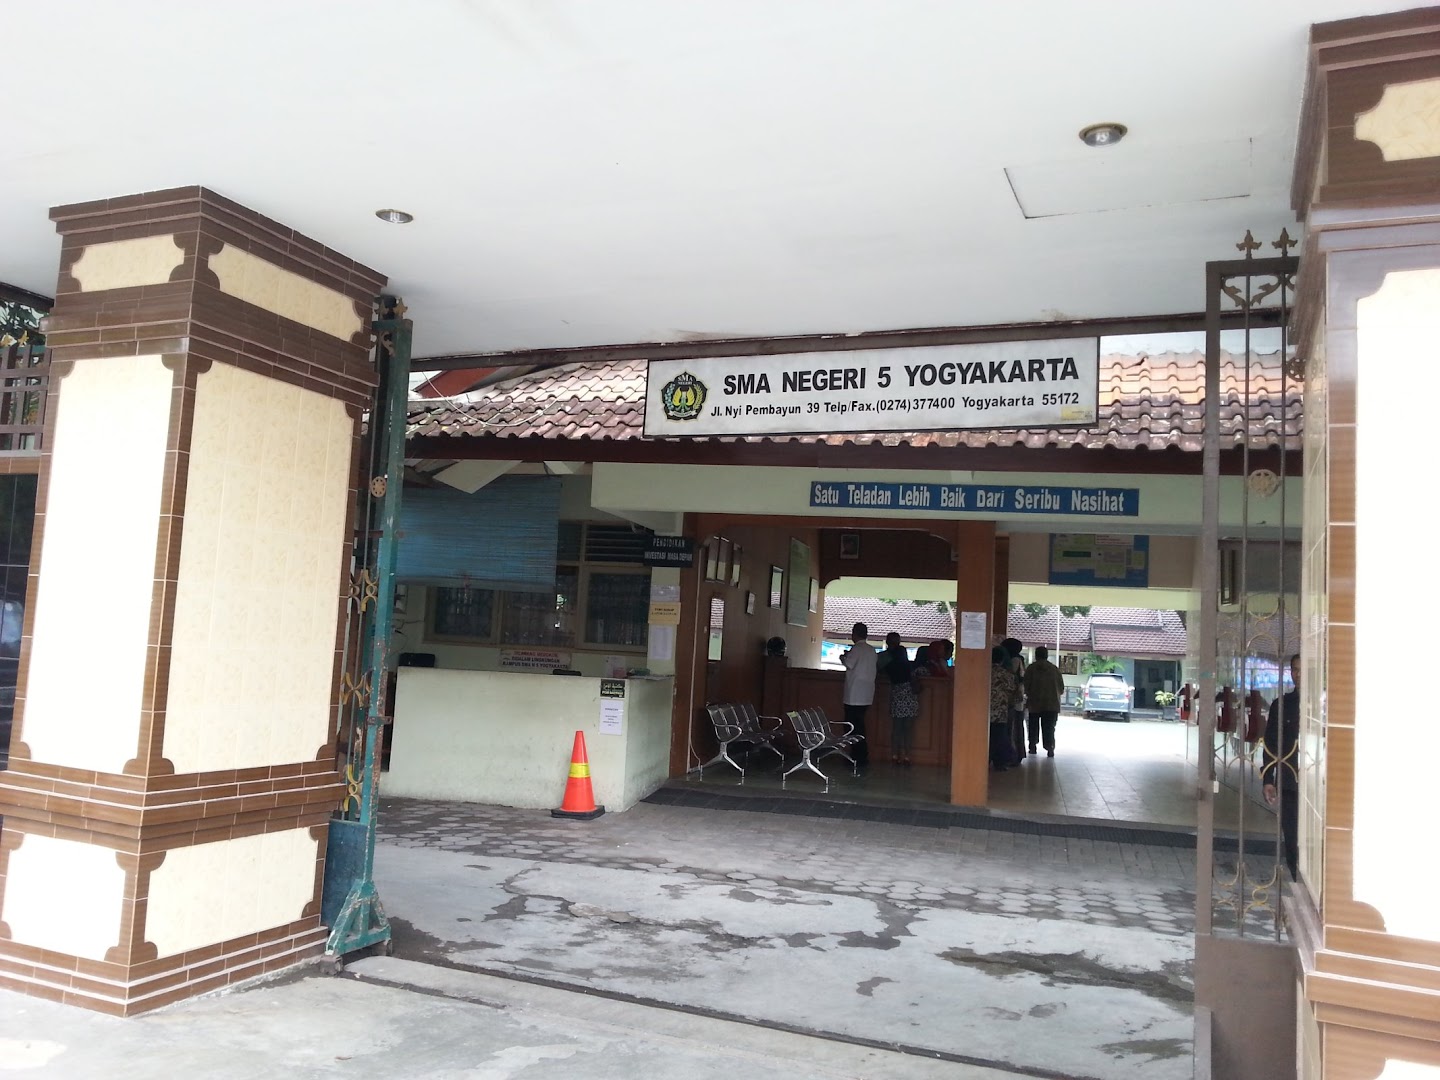 Sma Negeri 5 Puspanegara Yogyakarta Photo